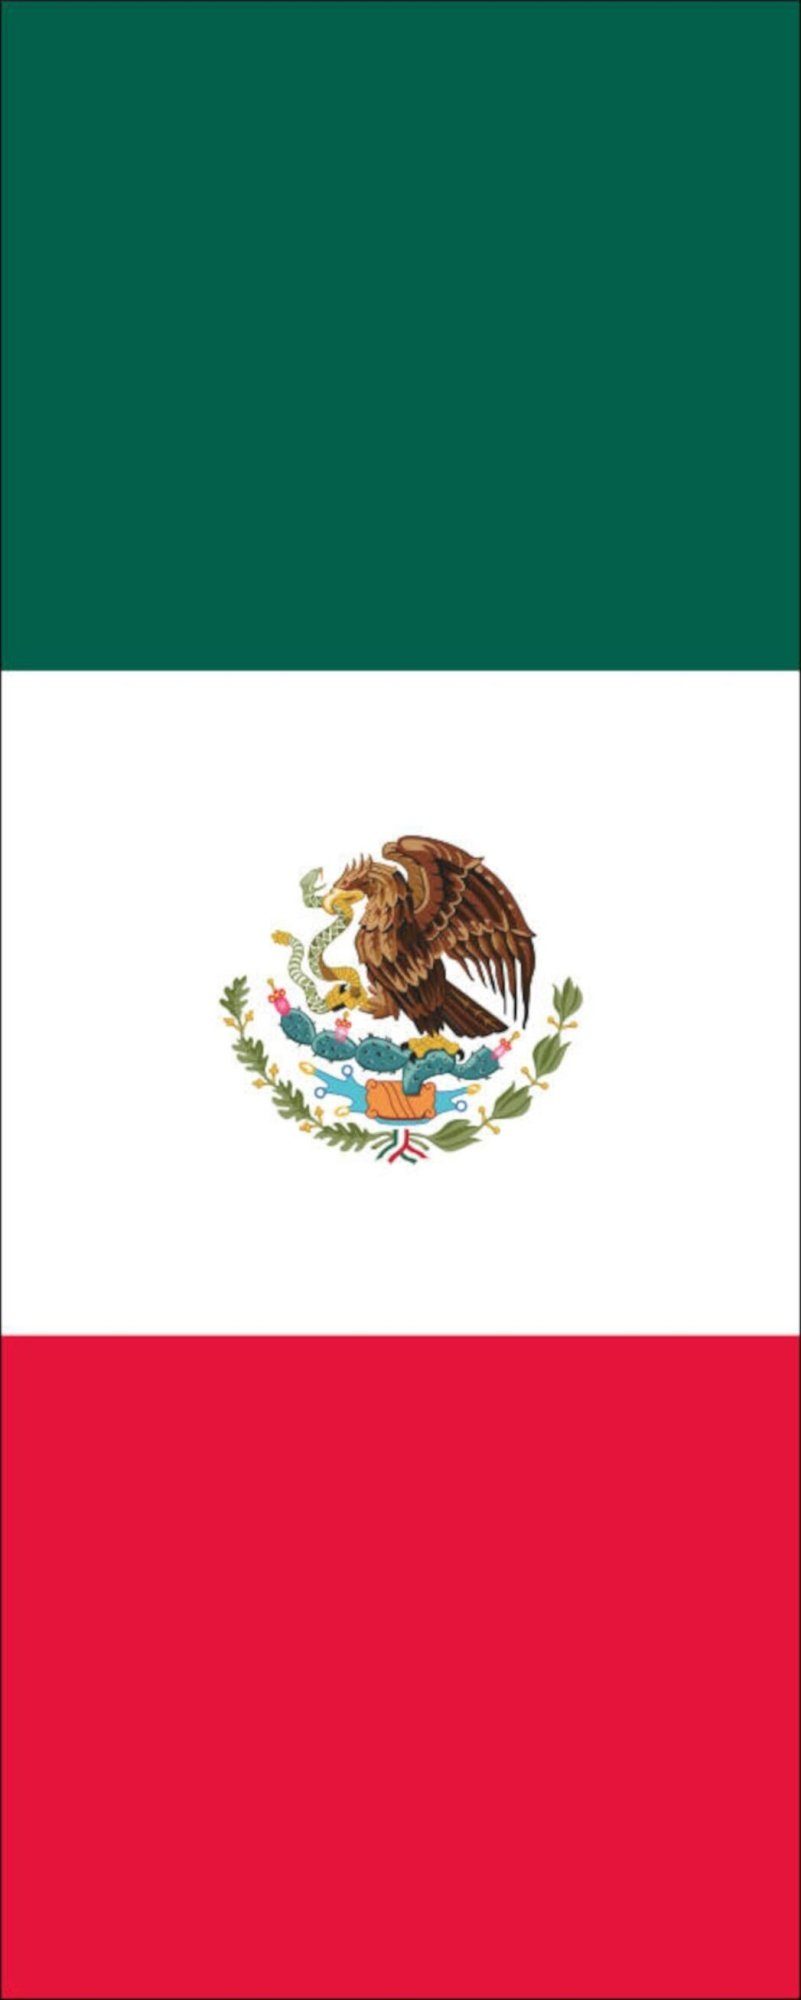 flaggenmeer Flagge Mexiko 120 g/m² Hochformat